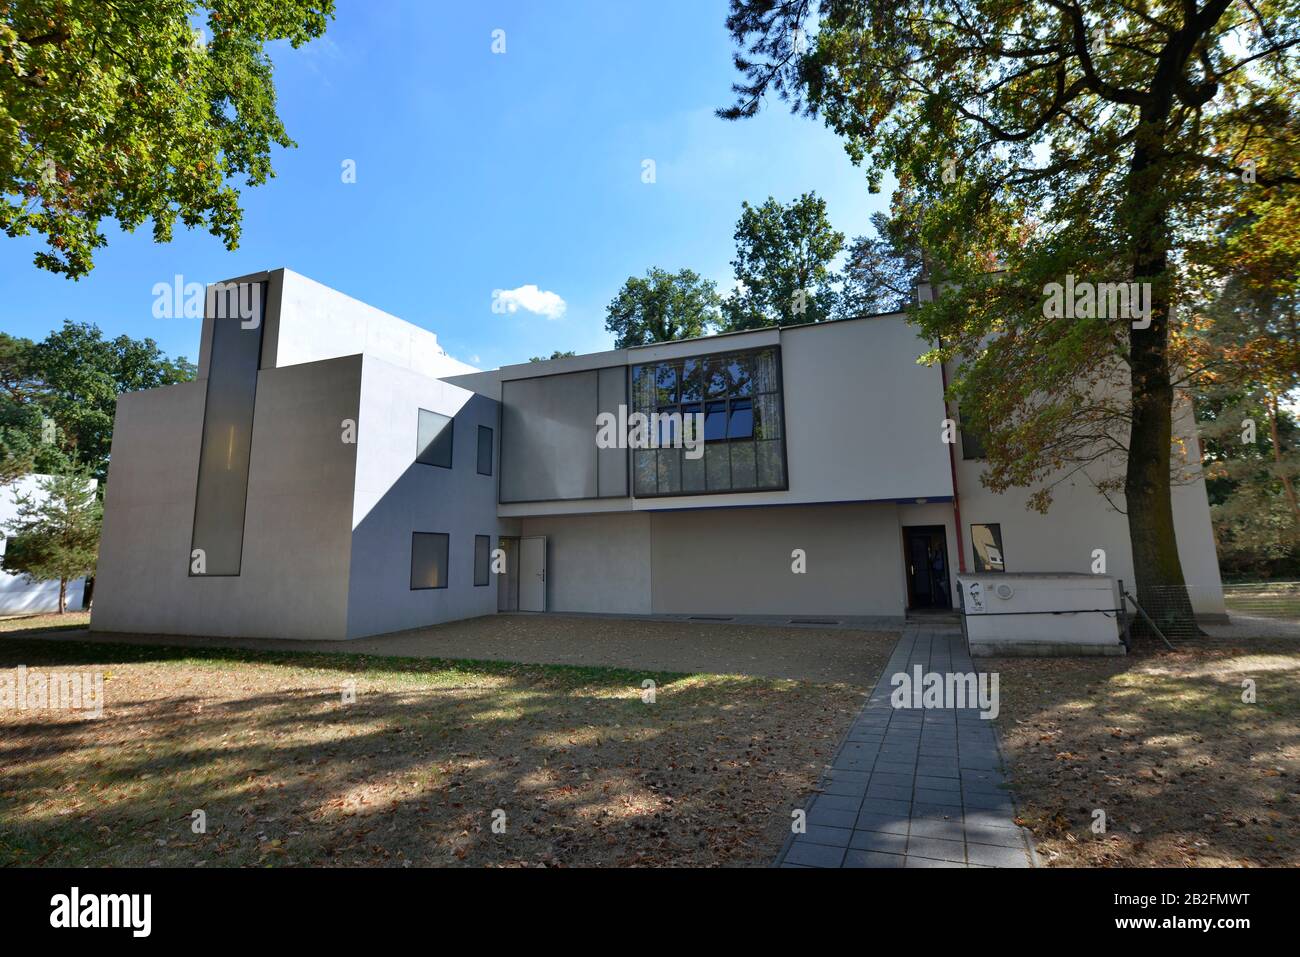 Haus Moholy-Nagy/Feininger, Meisterhaussiedlung, Ebertallee, Dessau, Sachsen-Anhalt, Allemagne Banque D'Images